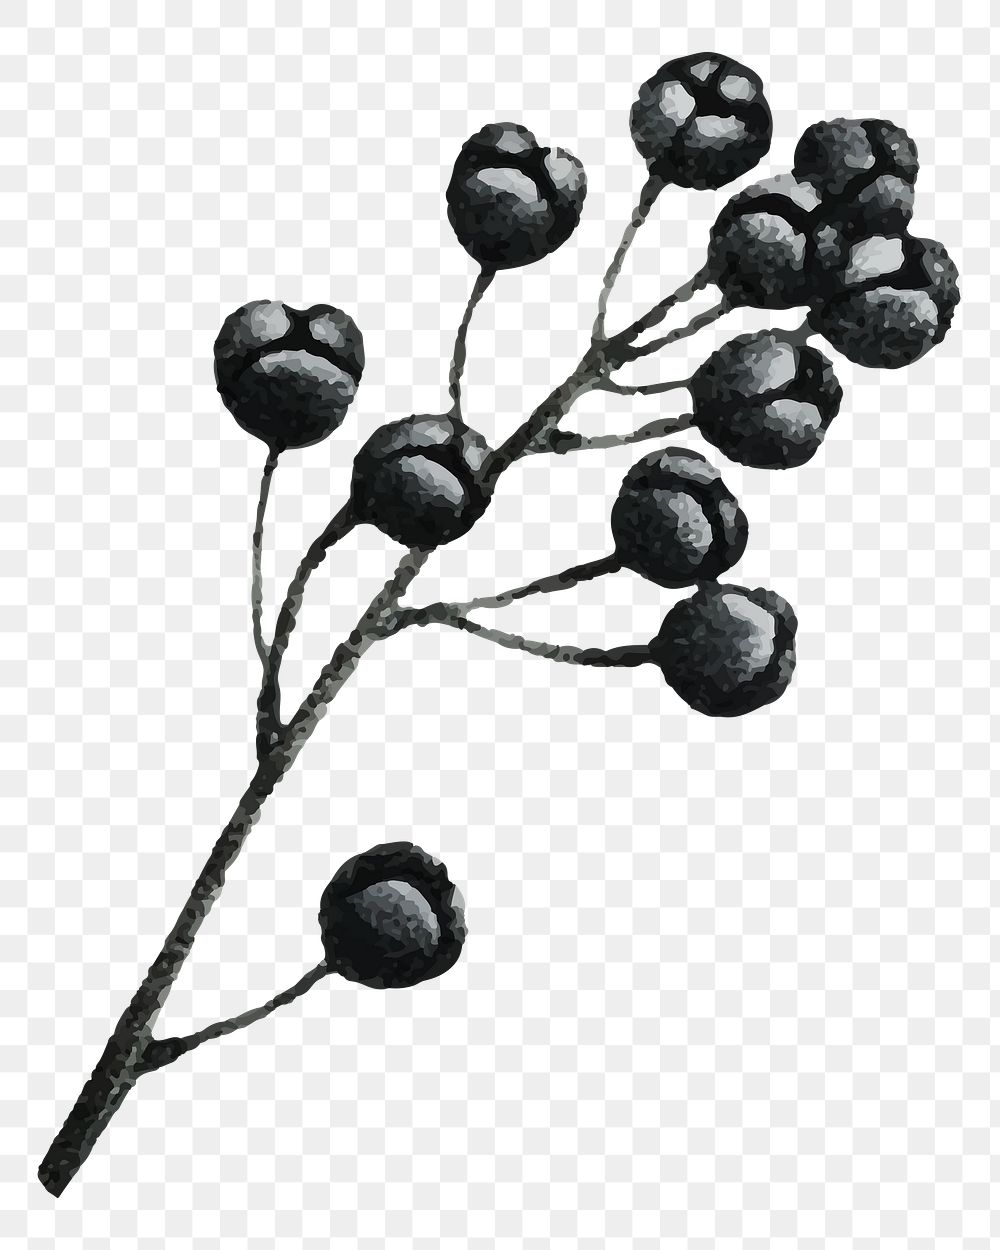 Fruit branches png sticker, black illustration, transparent background